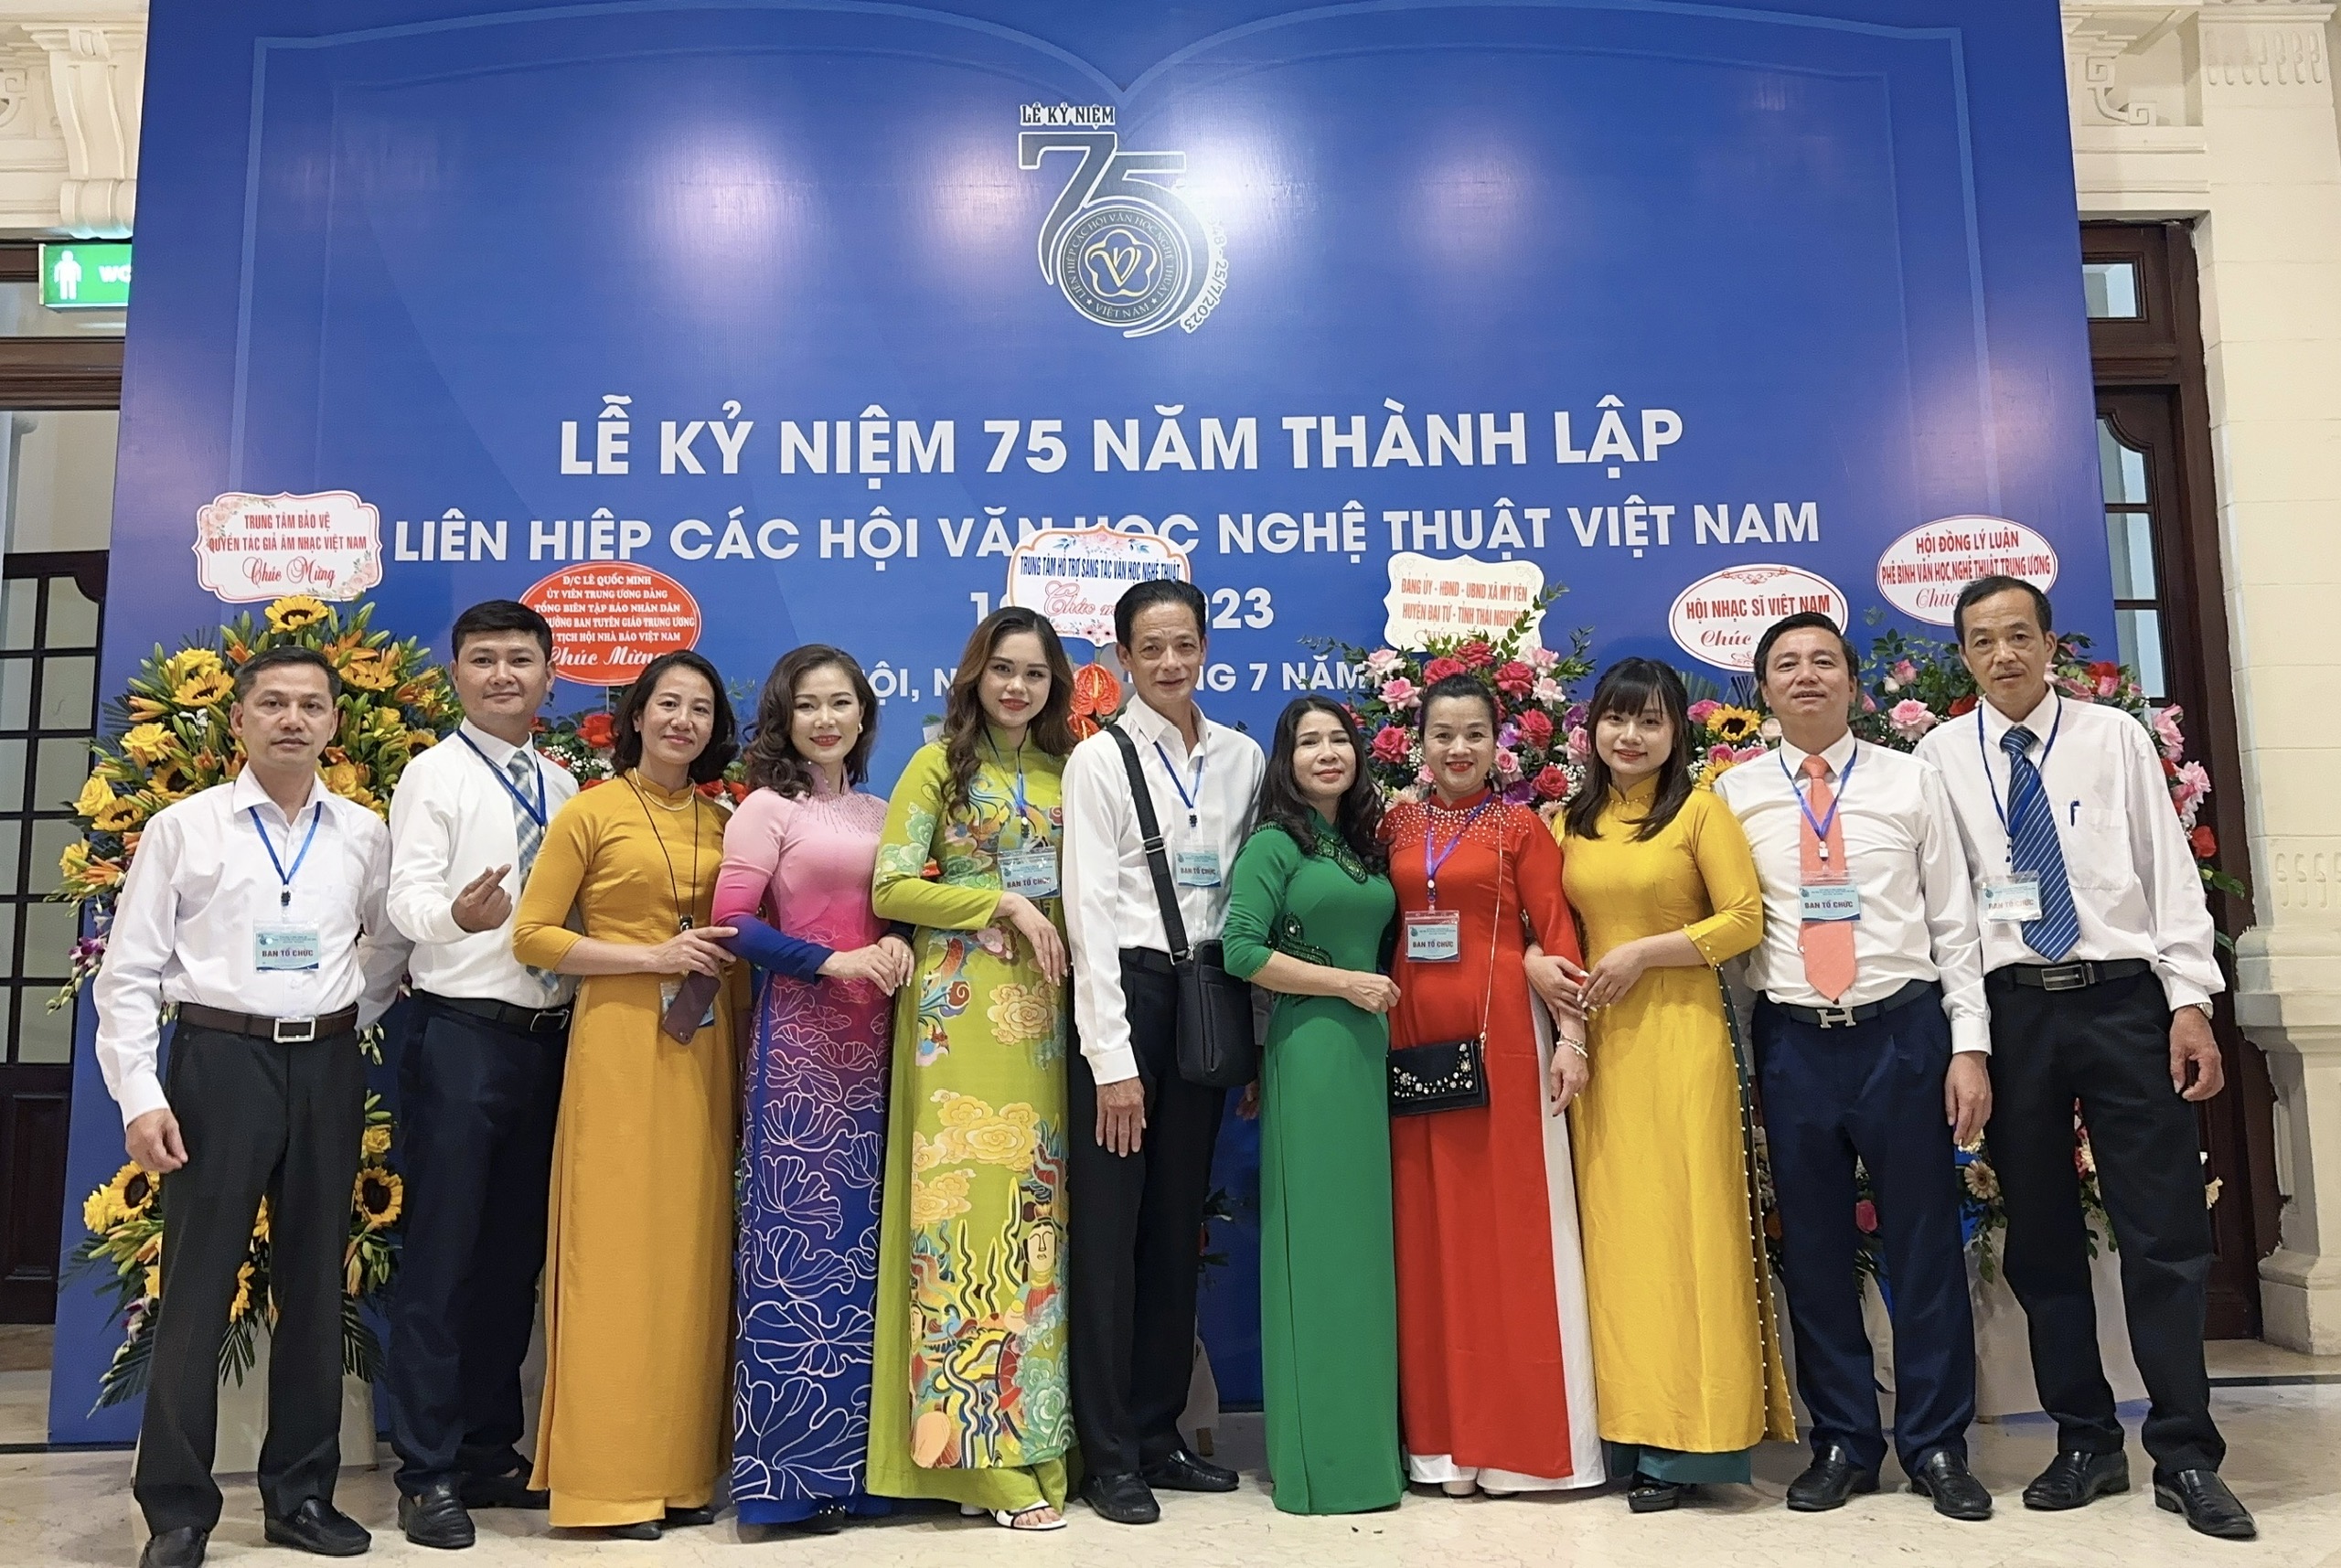 (Ảnh) Lễ kỷ niệm 75 năm thành lập Liên hiệp các Hội Văn học nghệ thuật Việt Nam - 18